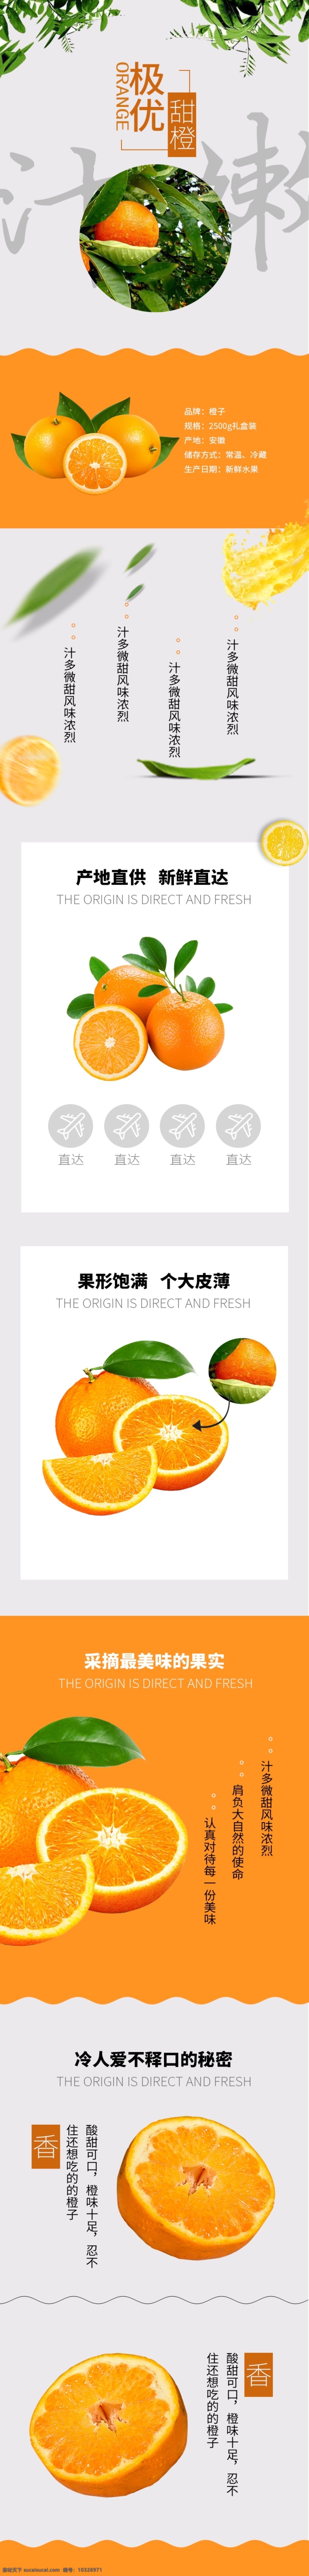 清新 时尚 简约 风格 橙子 水果 详情 页 橙子素材 食品 详情页 植物